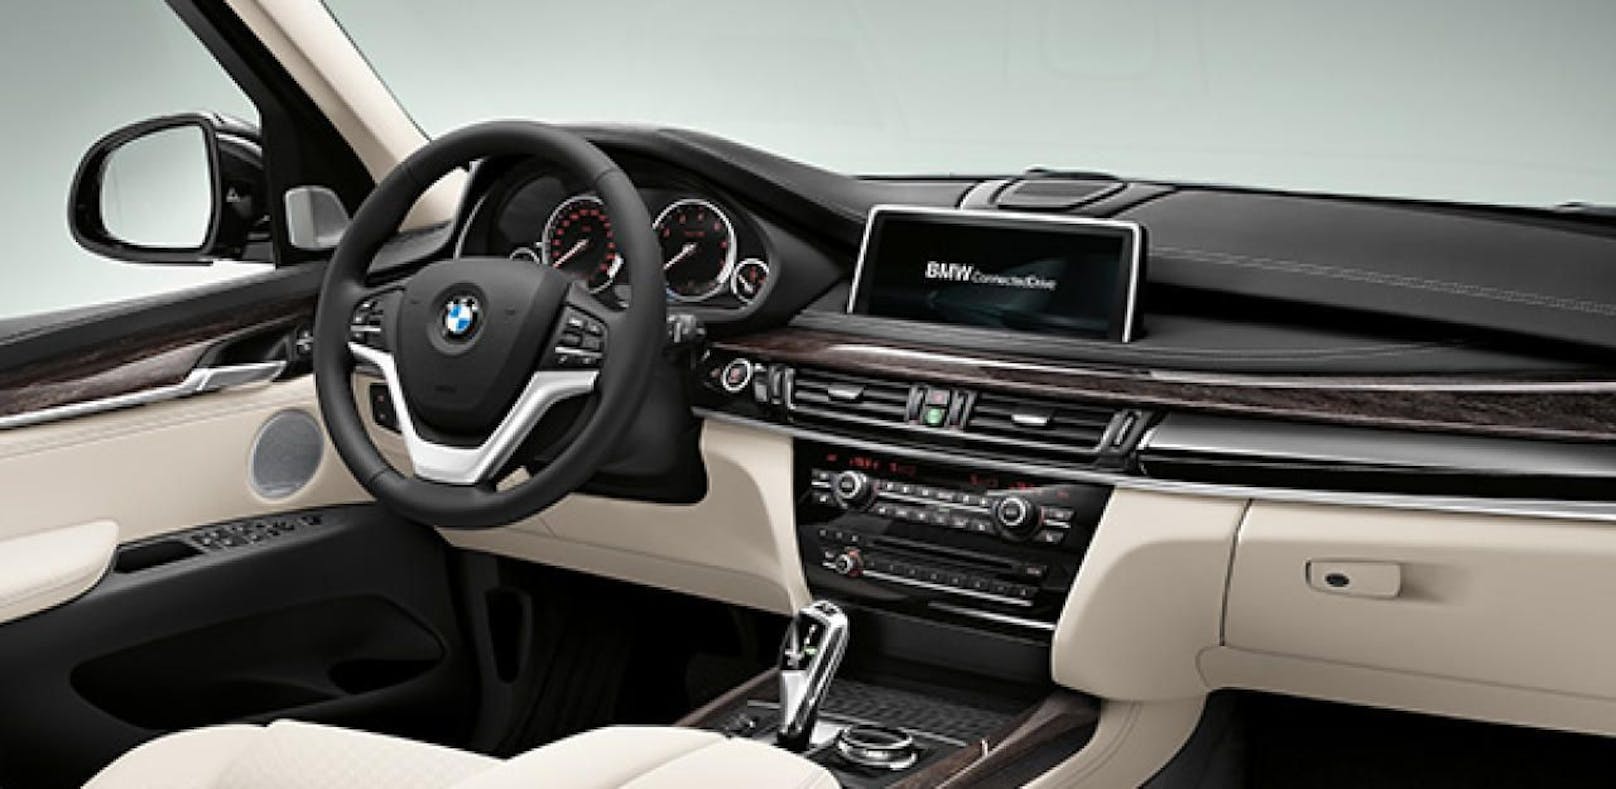 Edel, schön und daher begehrt: BMW X5